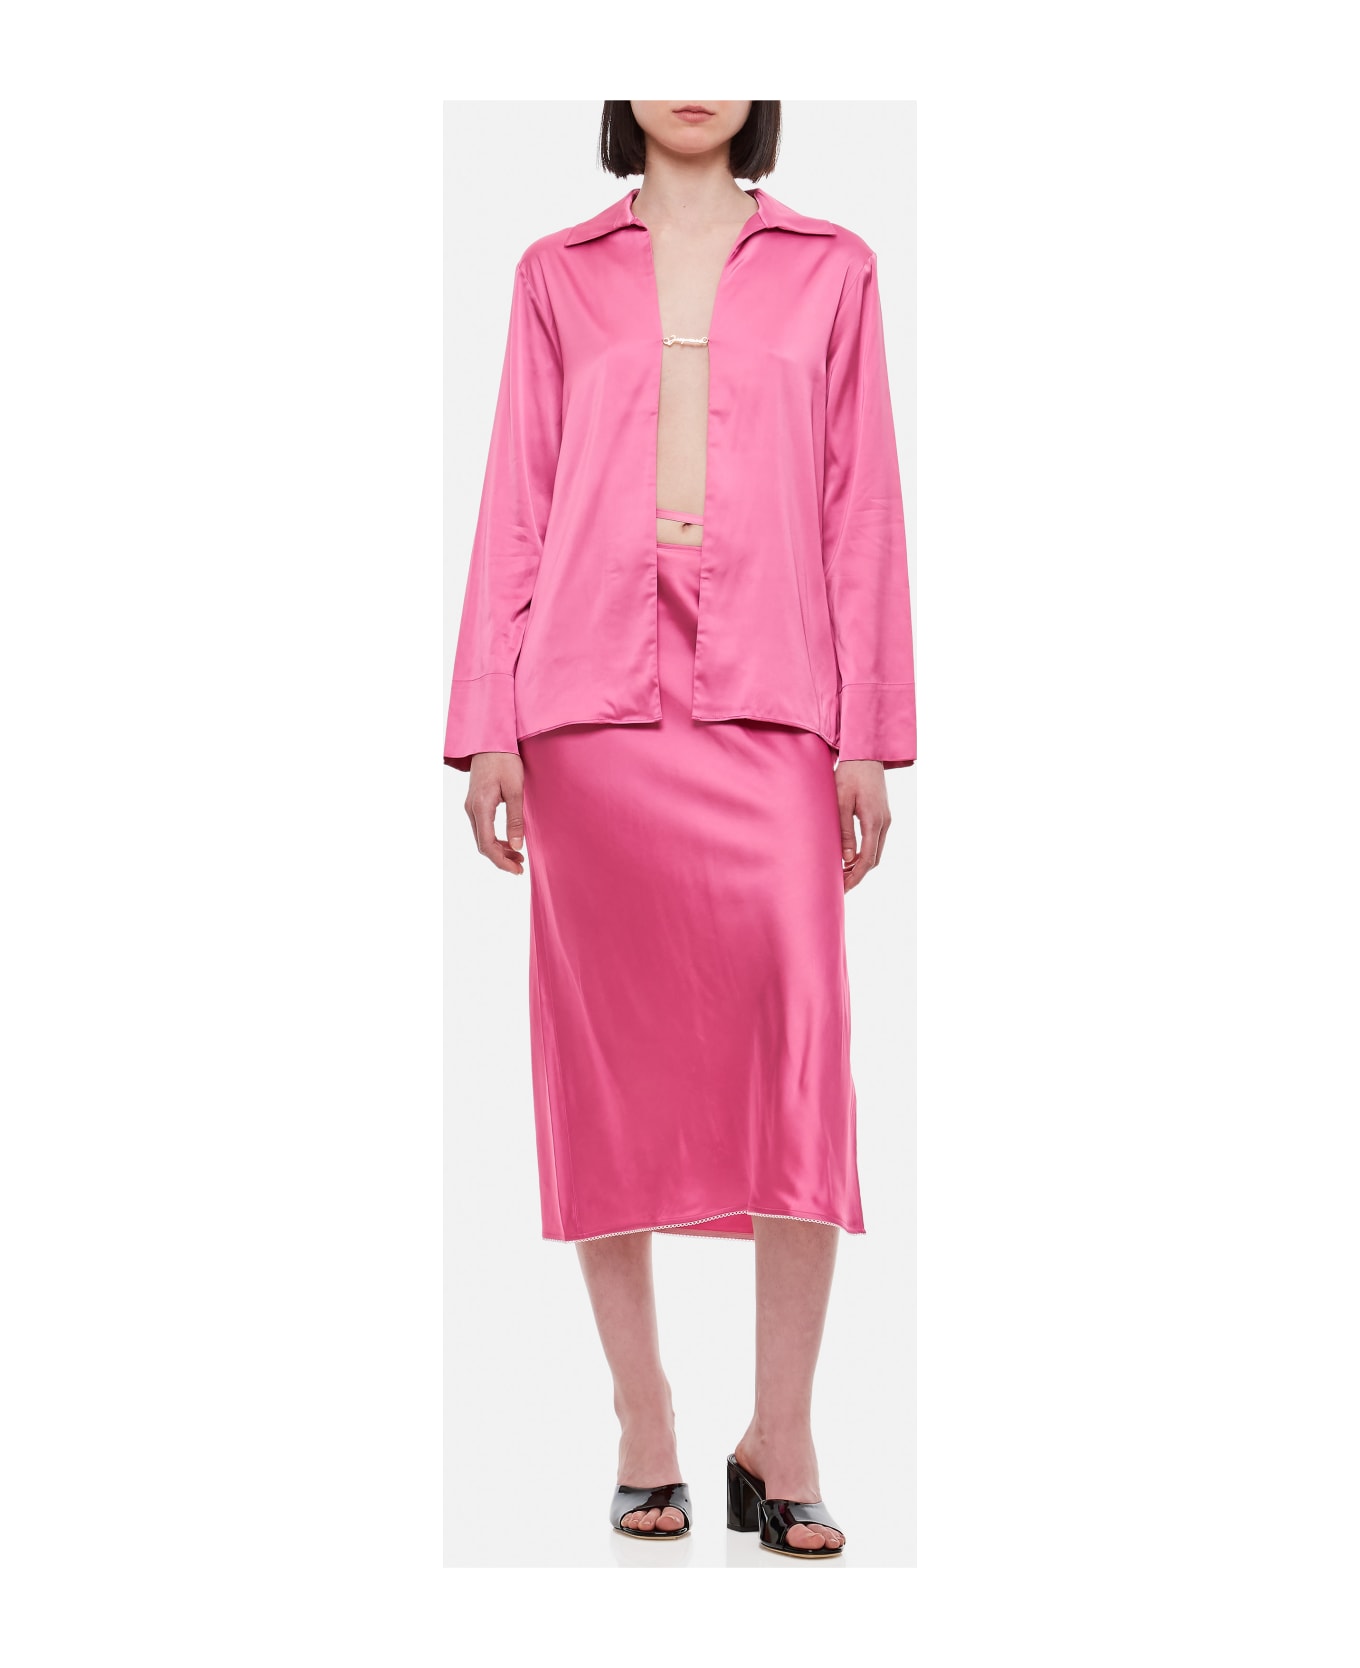 Jacquemus La Jupe Notte - Pink スカート